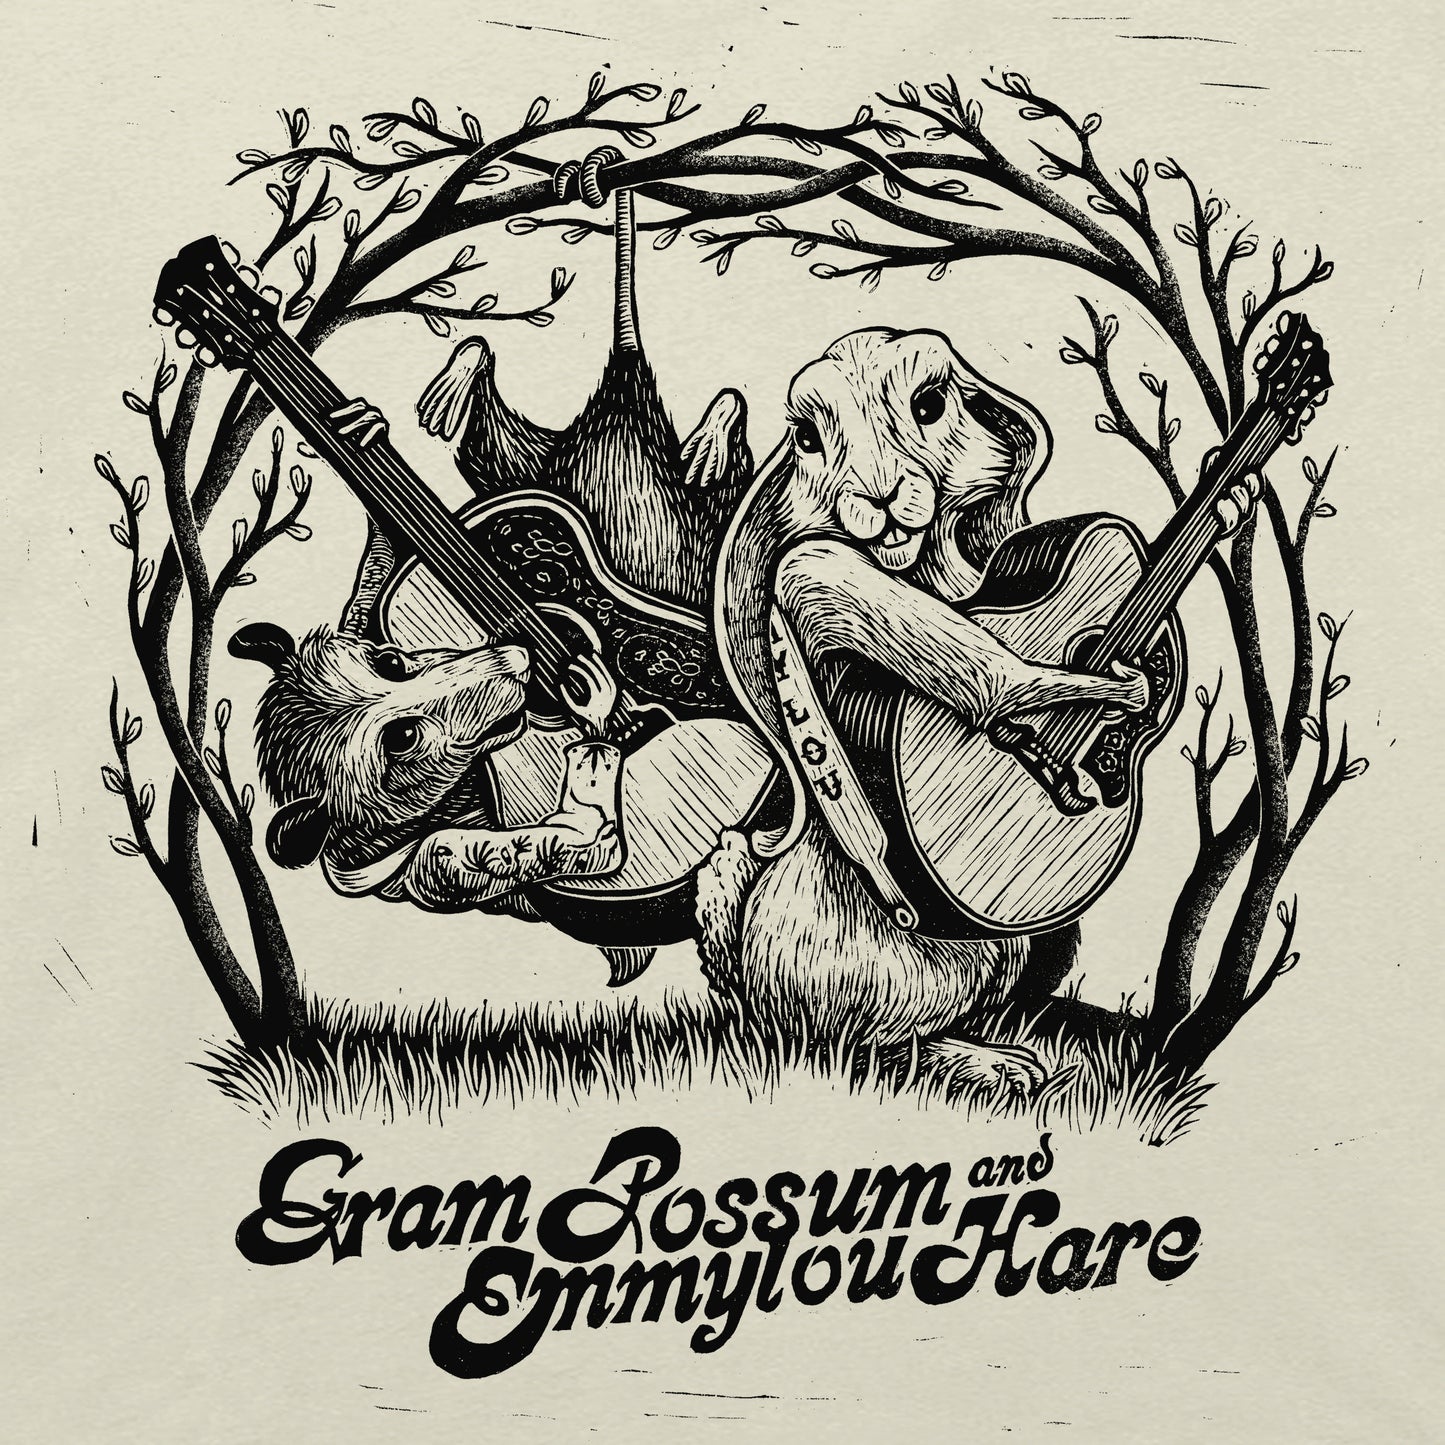 Gram Possum and Emmylou Hare Shirt